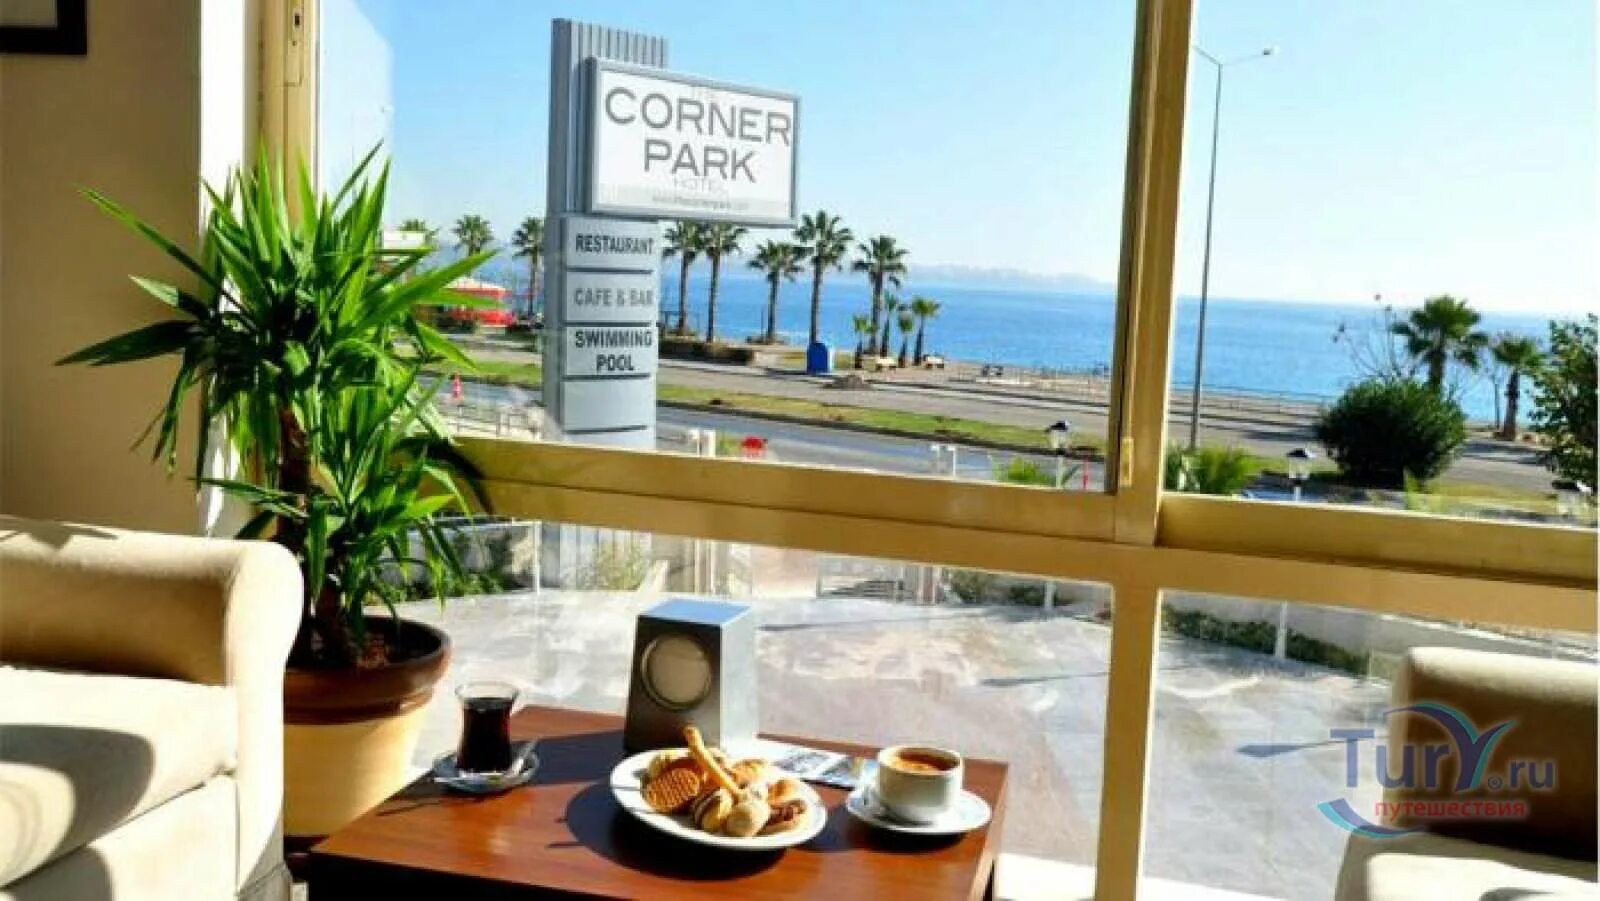 The Corner Park Hotel Antalya. Meltem Hotel 2 Анталия бар. The Corner Park Hotel Antalya фото номеров. The corner park hotel